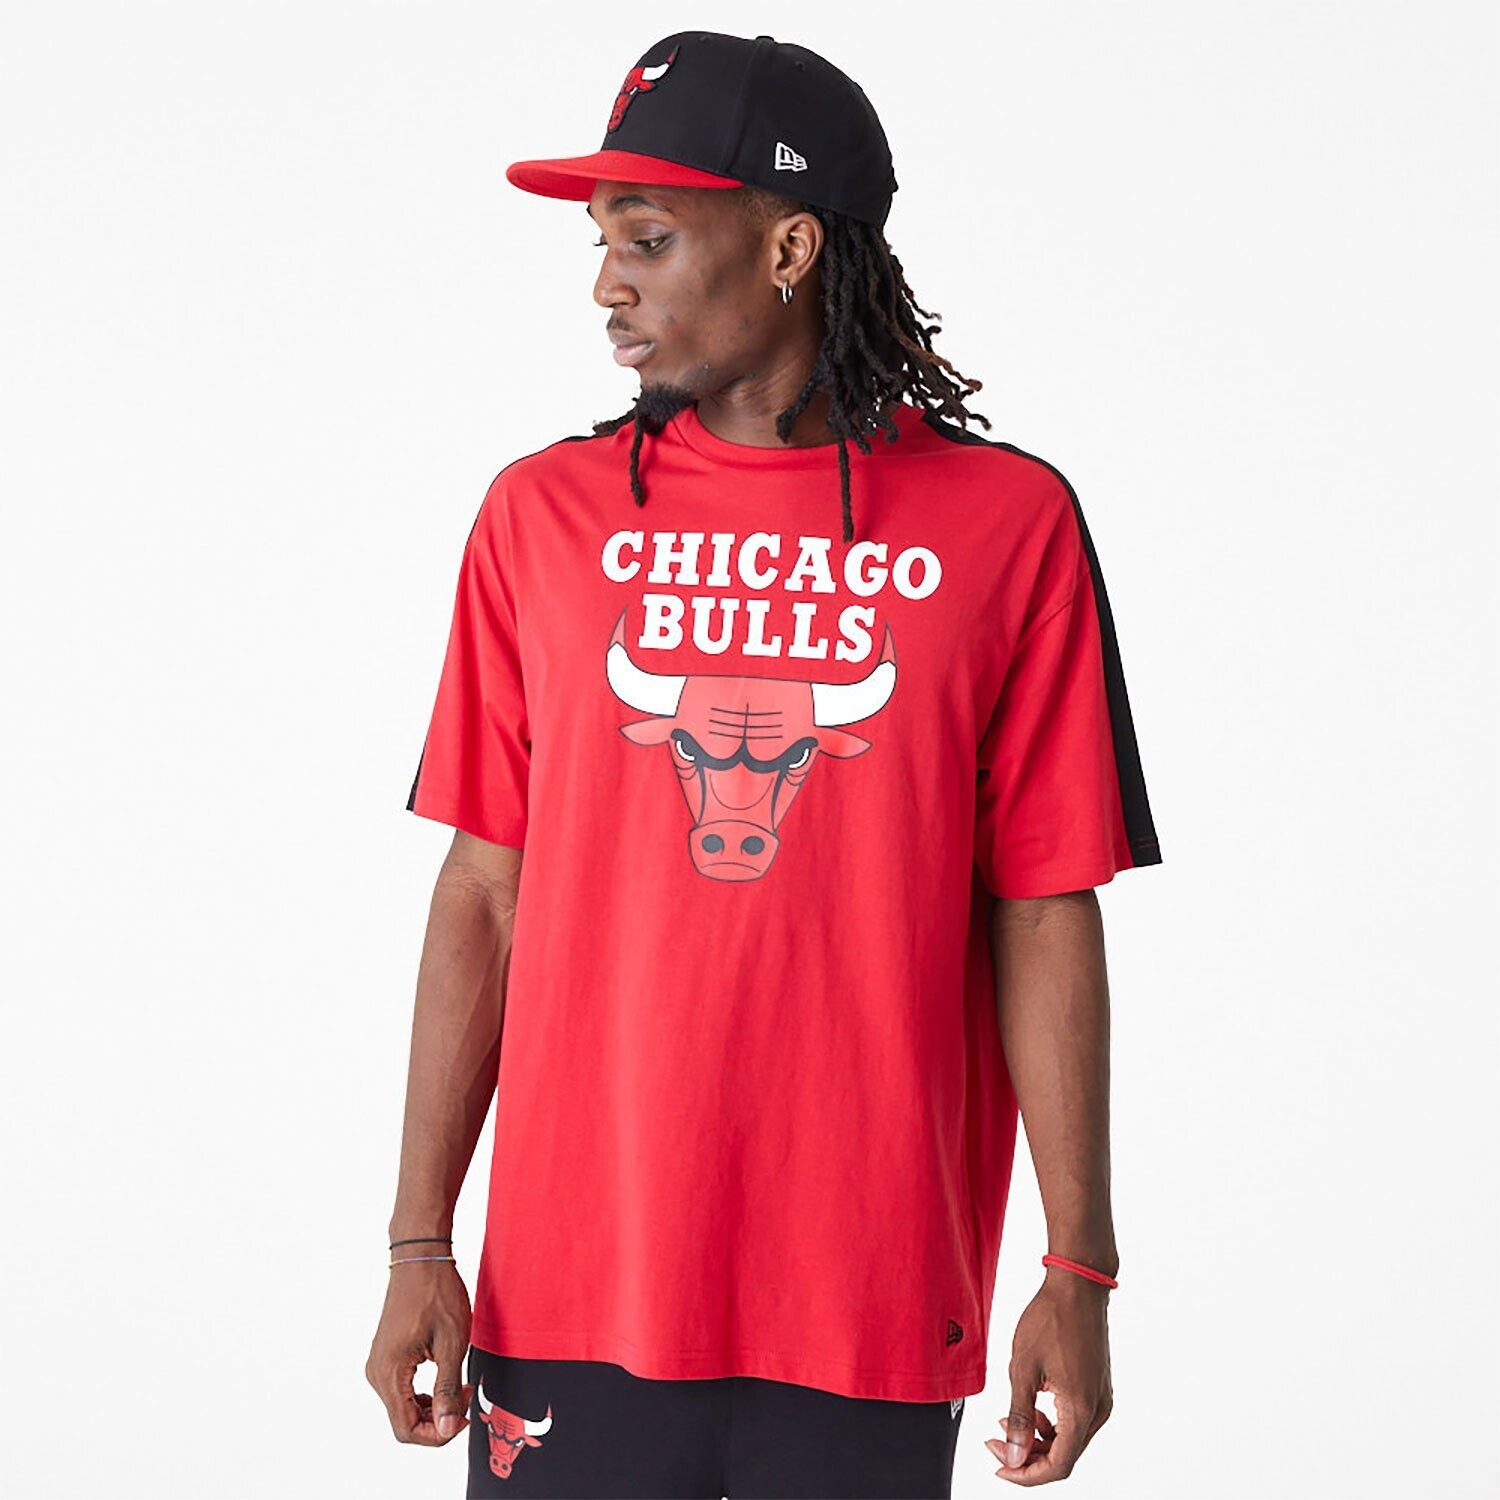 T-Shirt Chicago Bulls Rossa oversize Colorblock Chicago Bulls NBA Colour Block New Era Rosso Nero Bianco Toro NBA Cut And Sew Rossa art. 60416361